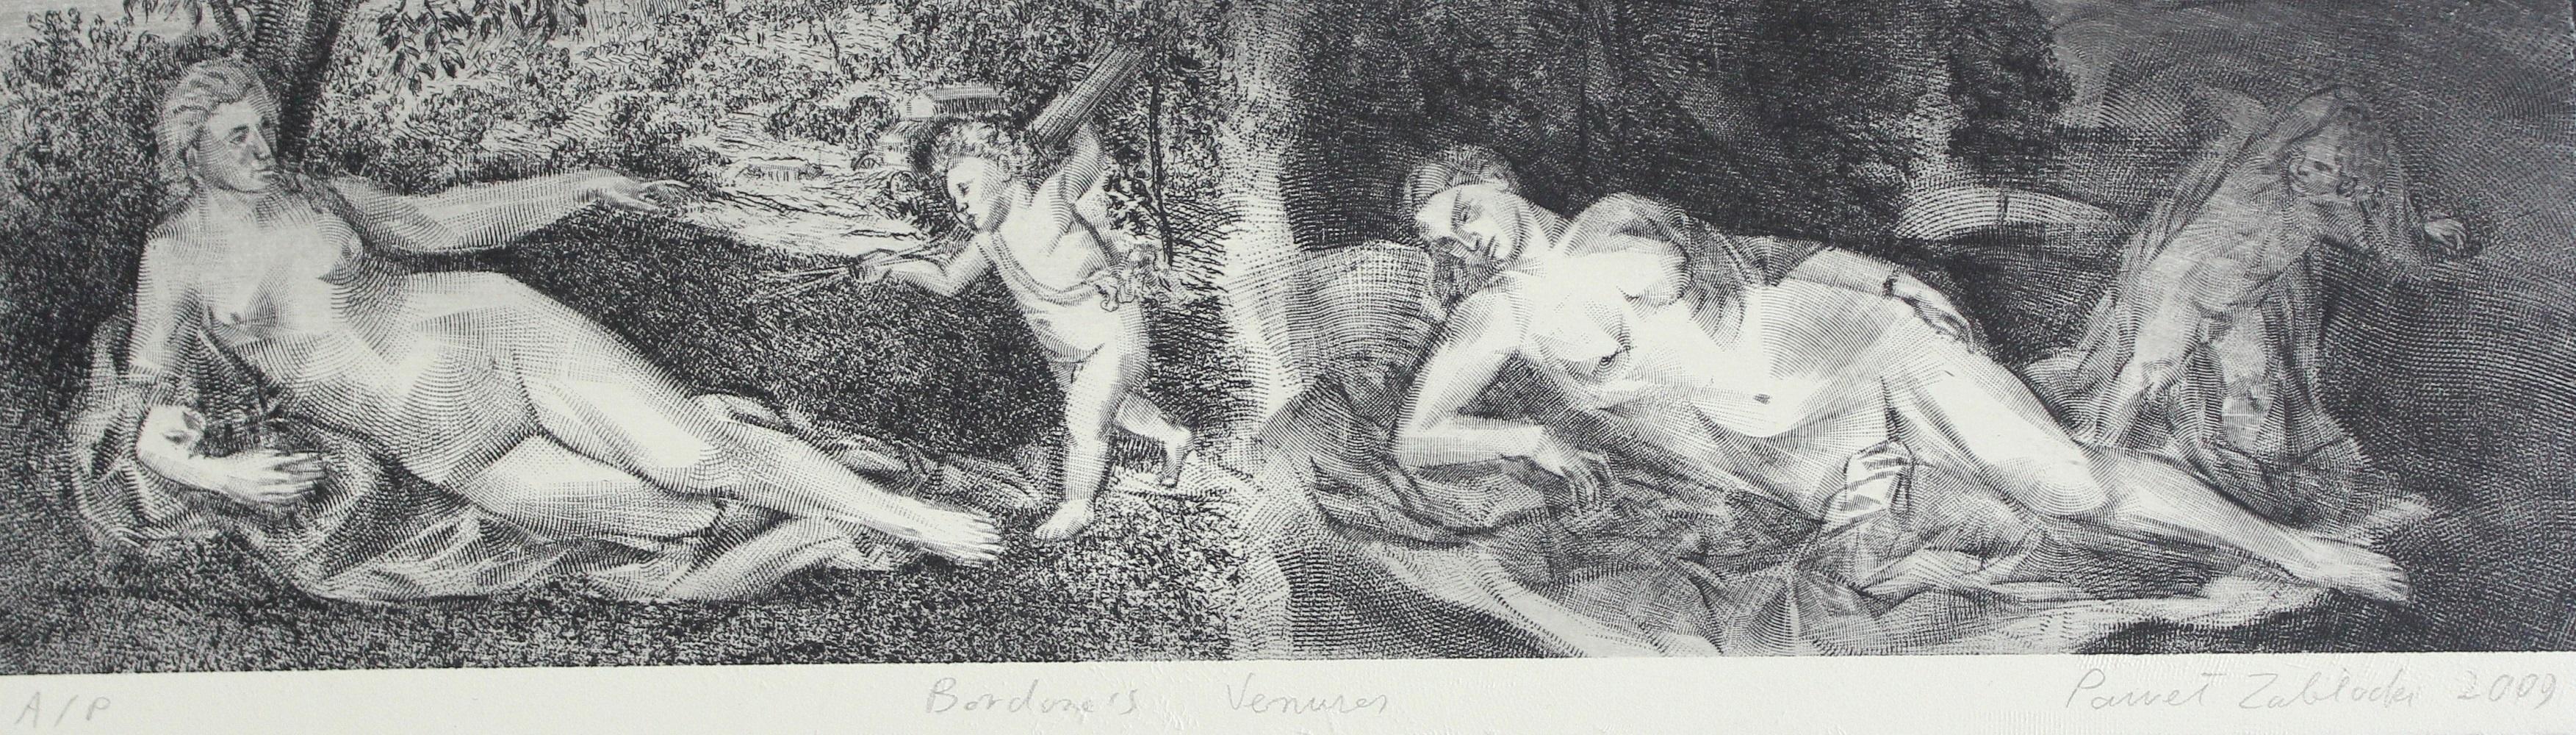 Bordone: Venus von Bordone – zeitgenössischer figurativer Radierungsdruck, Akt, Landschaft – Print von Pawel Zablocki